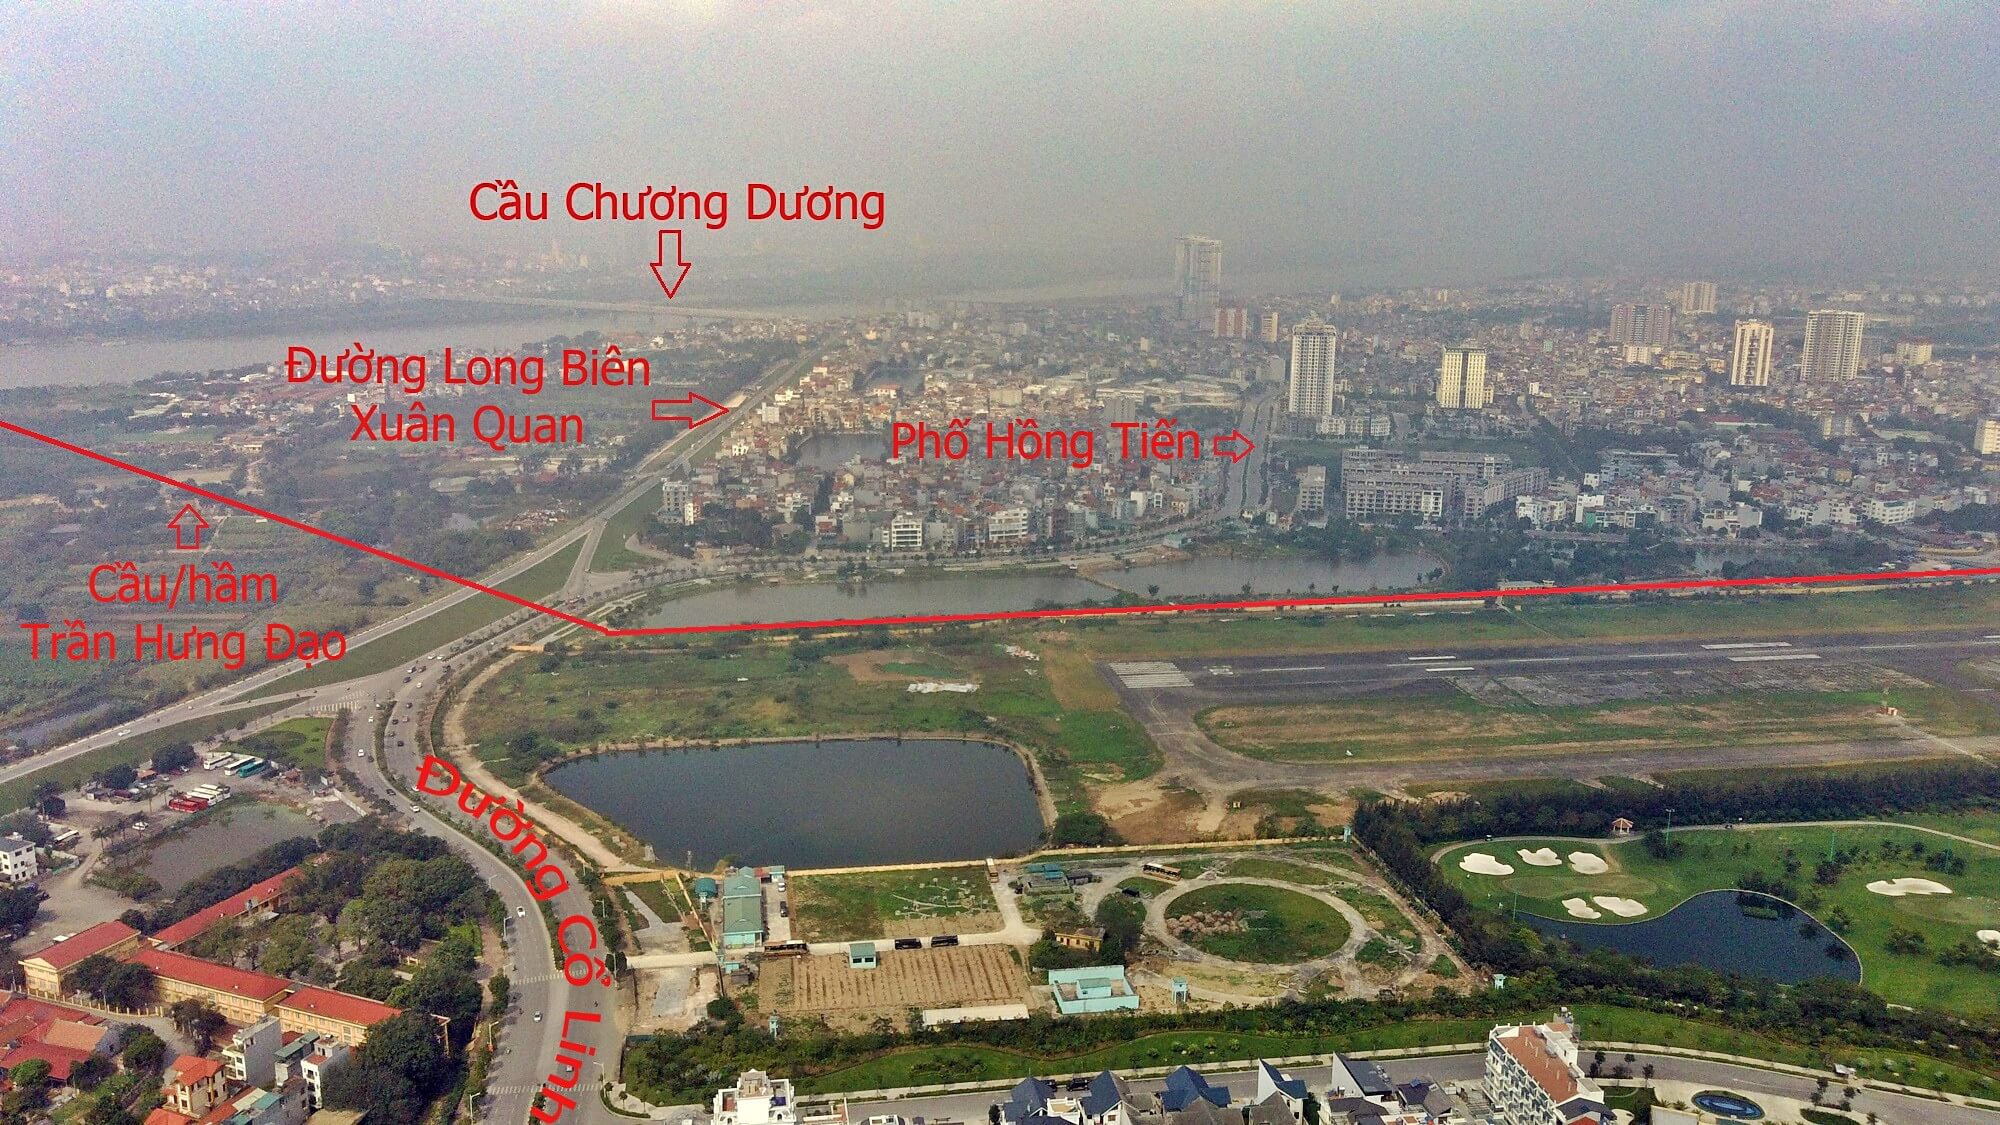 Lộ trình hầm/cầu Trần Hưng Đạo về phía quận Long Biên.